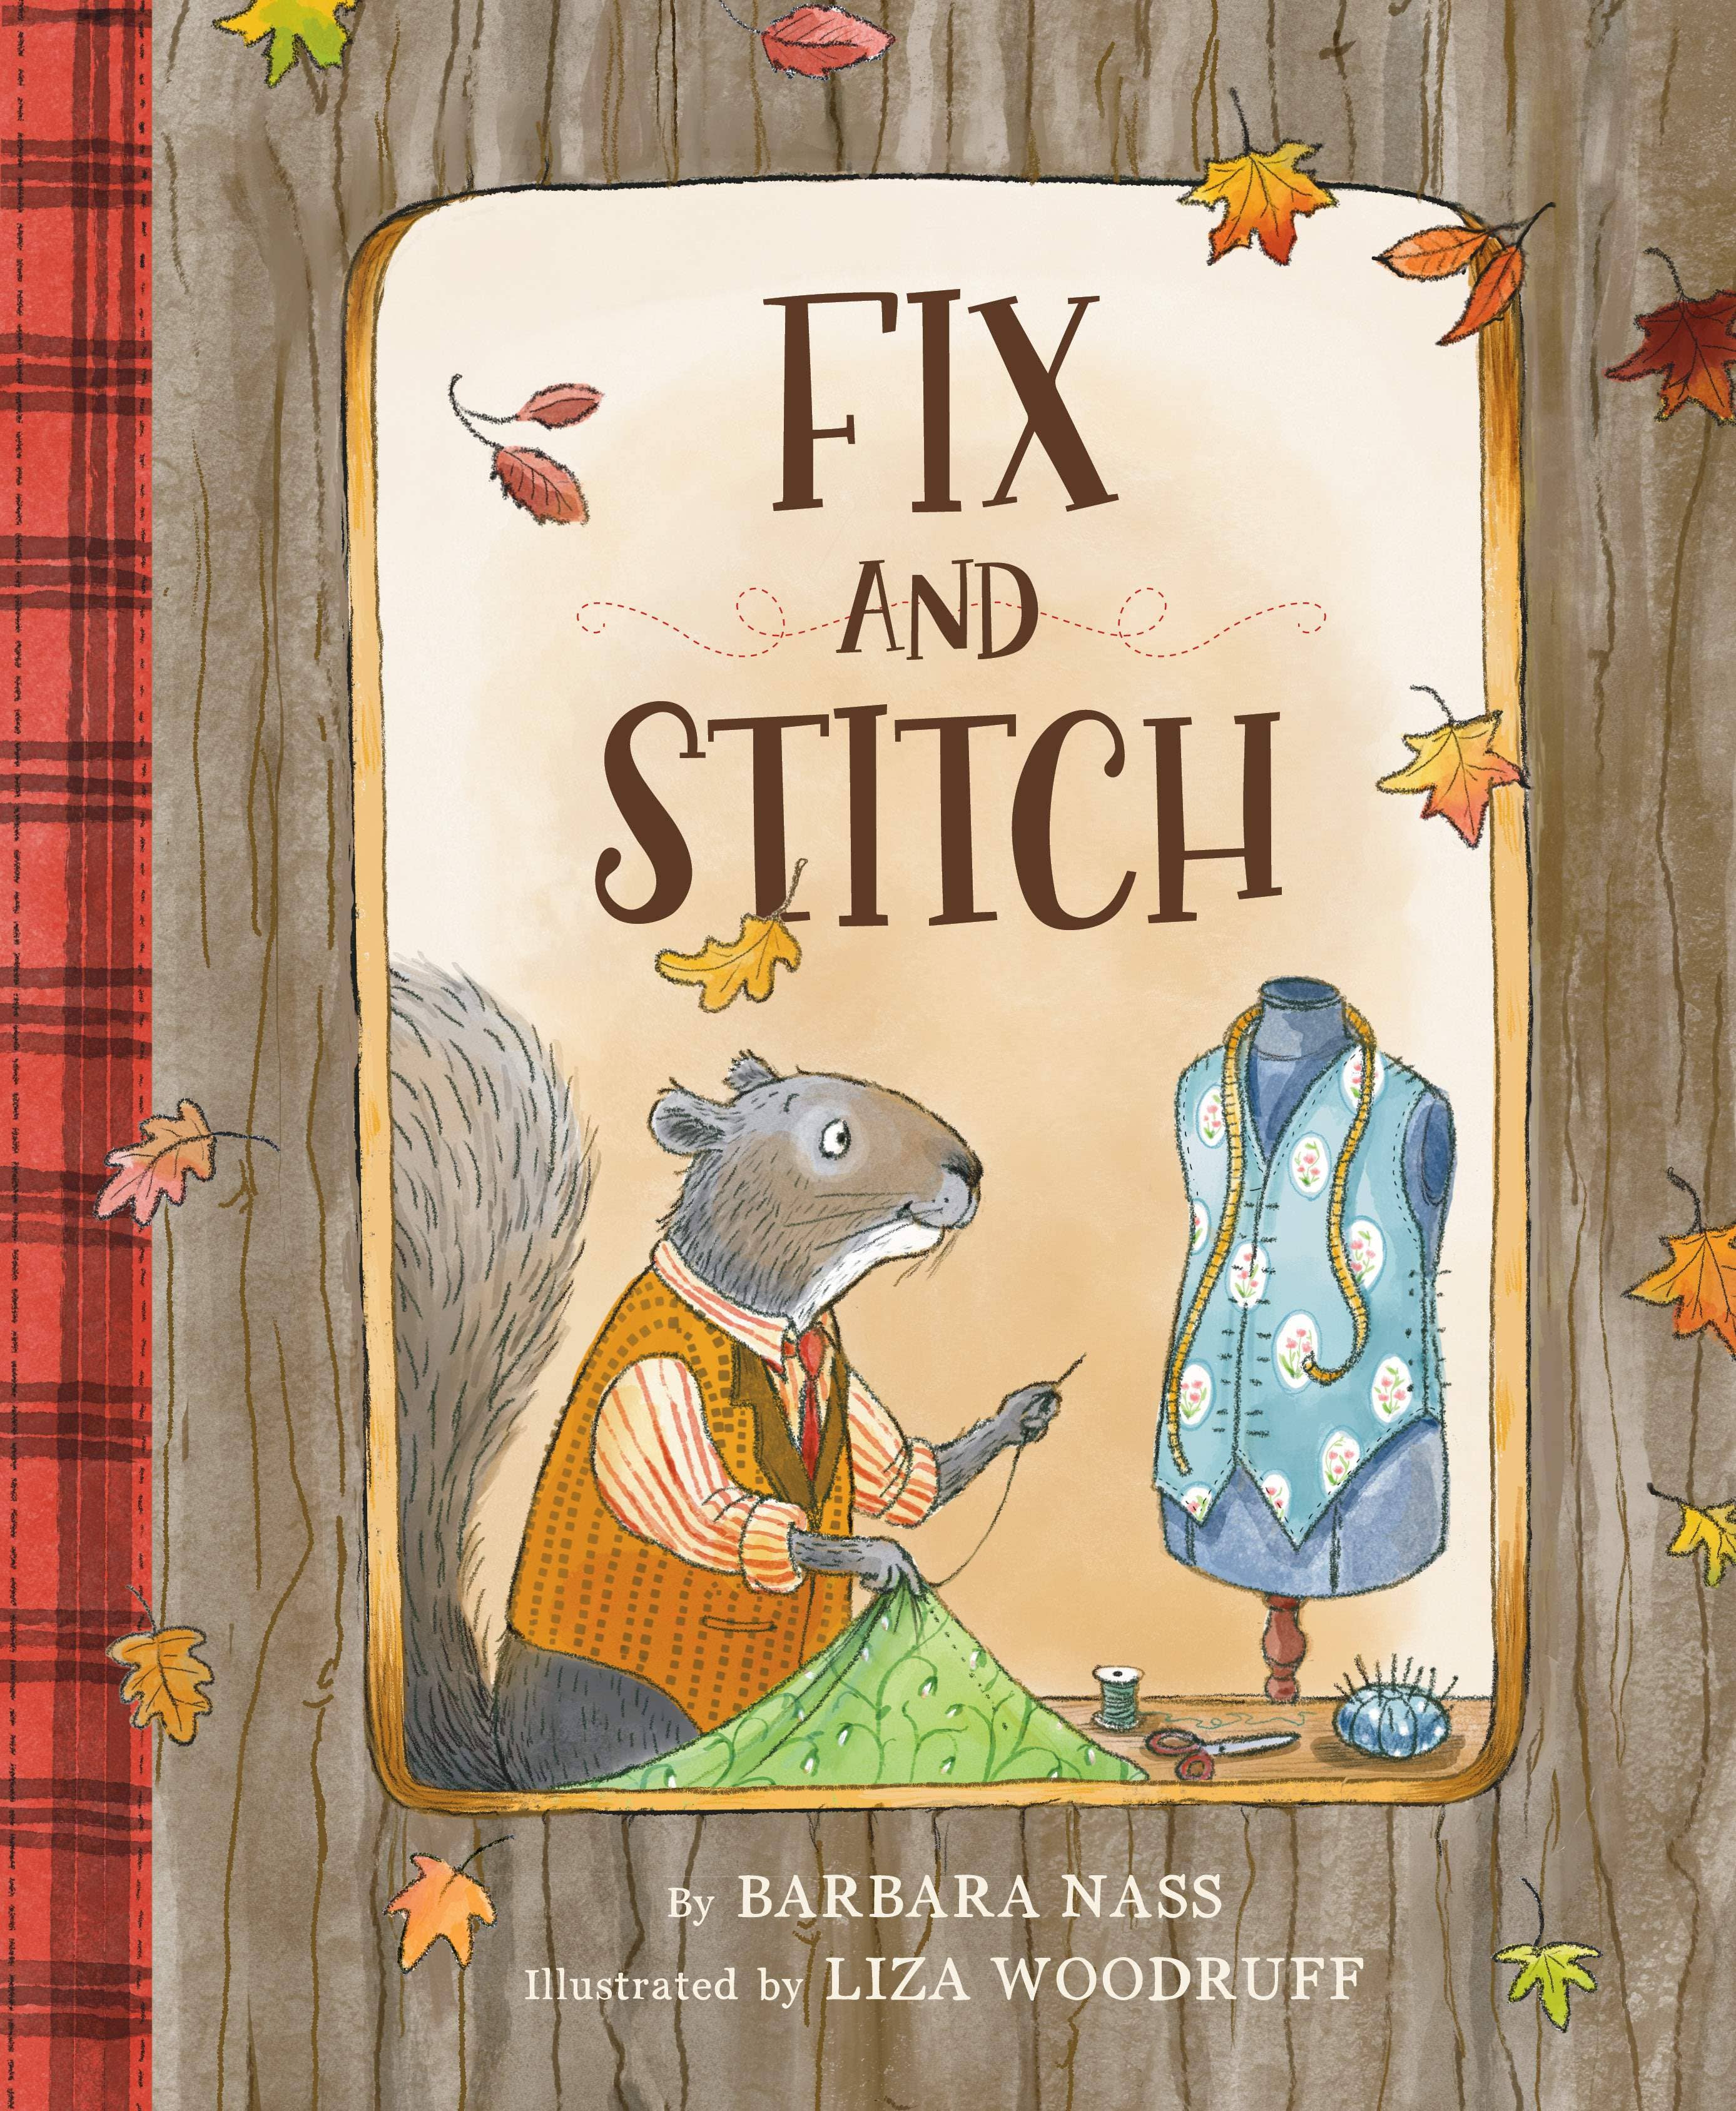 Fix and Stitch: a children's picture book